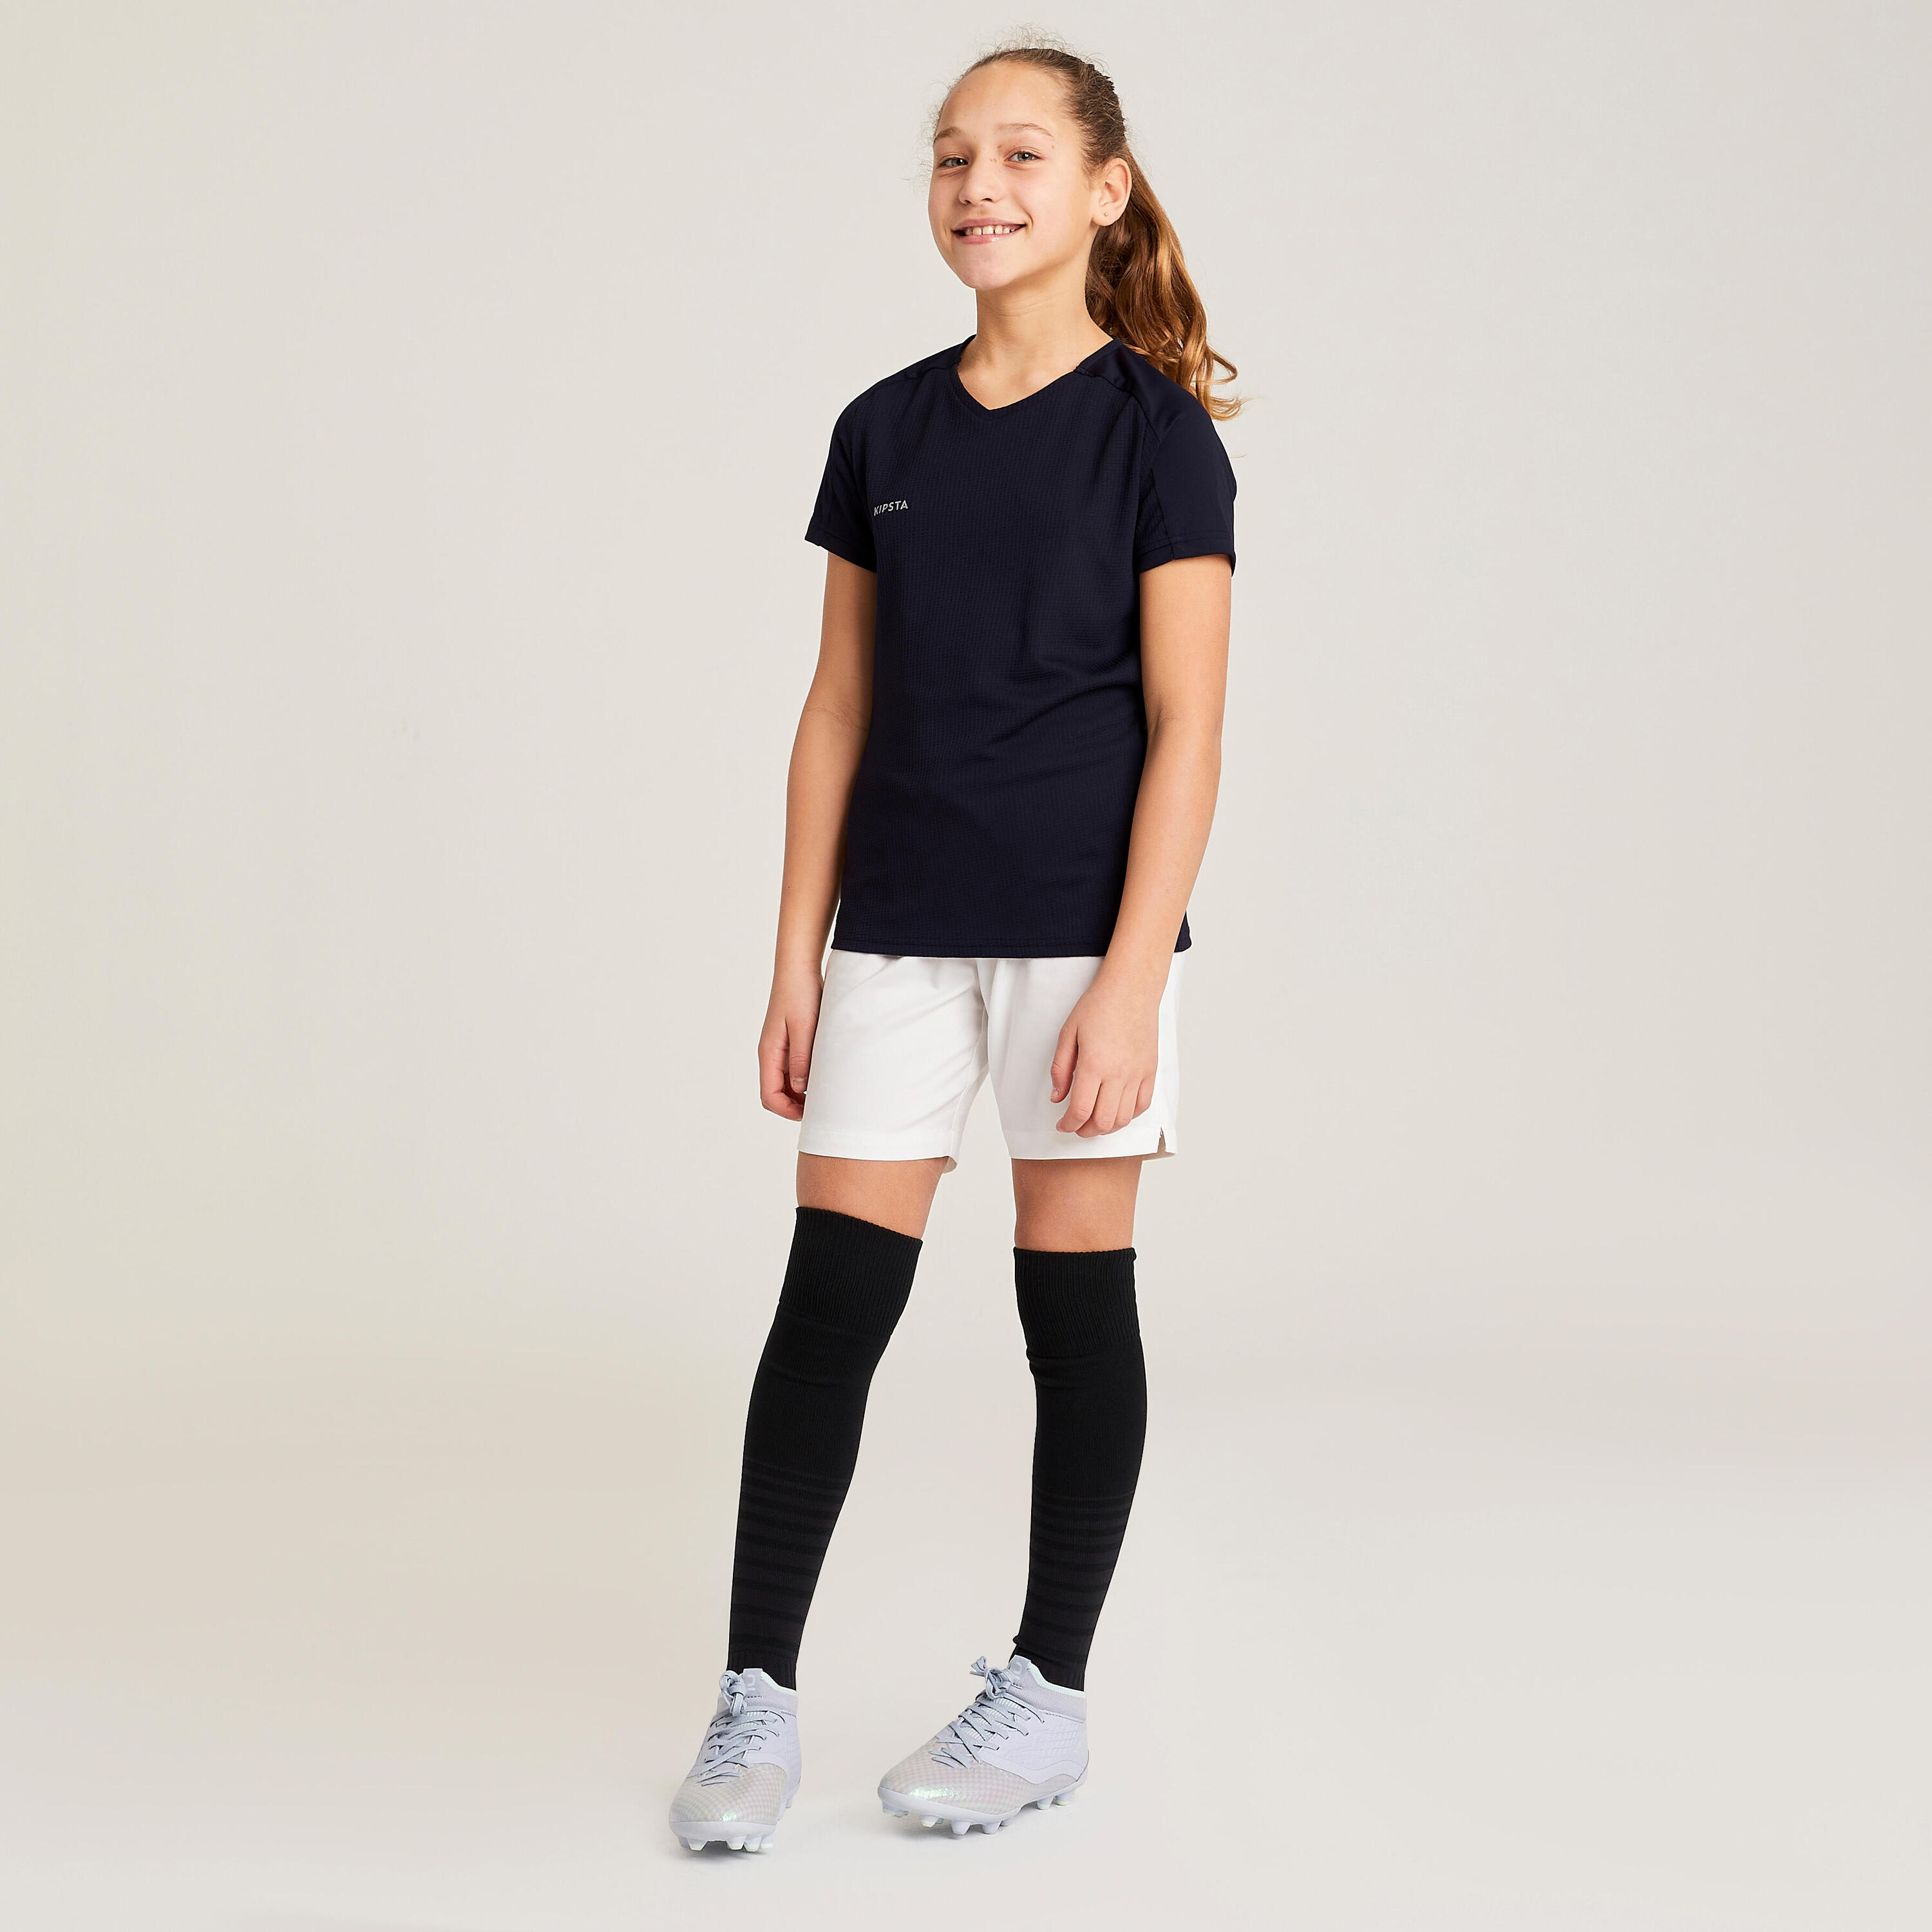 Girls' Football Shirt Viralto - Black 2/10